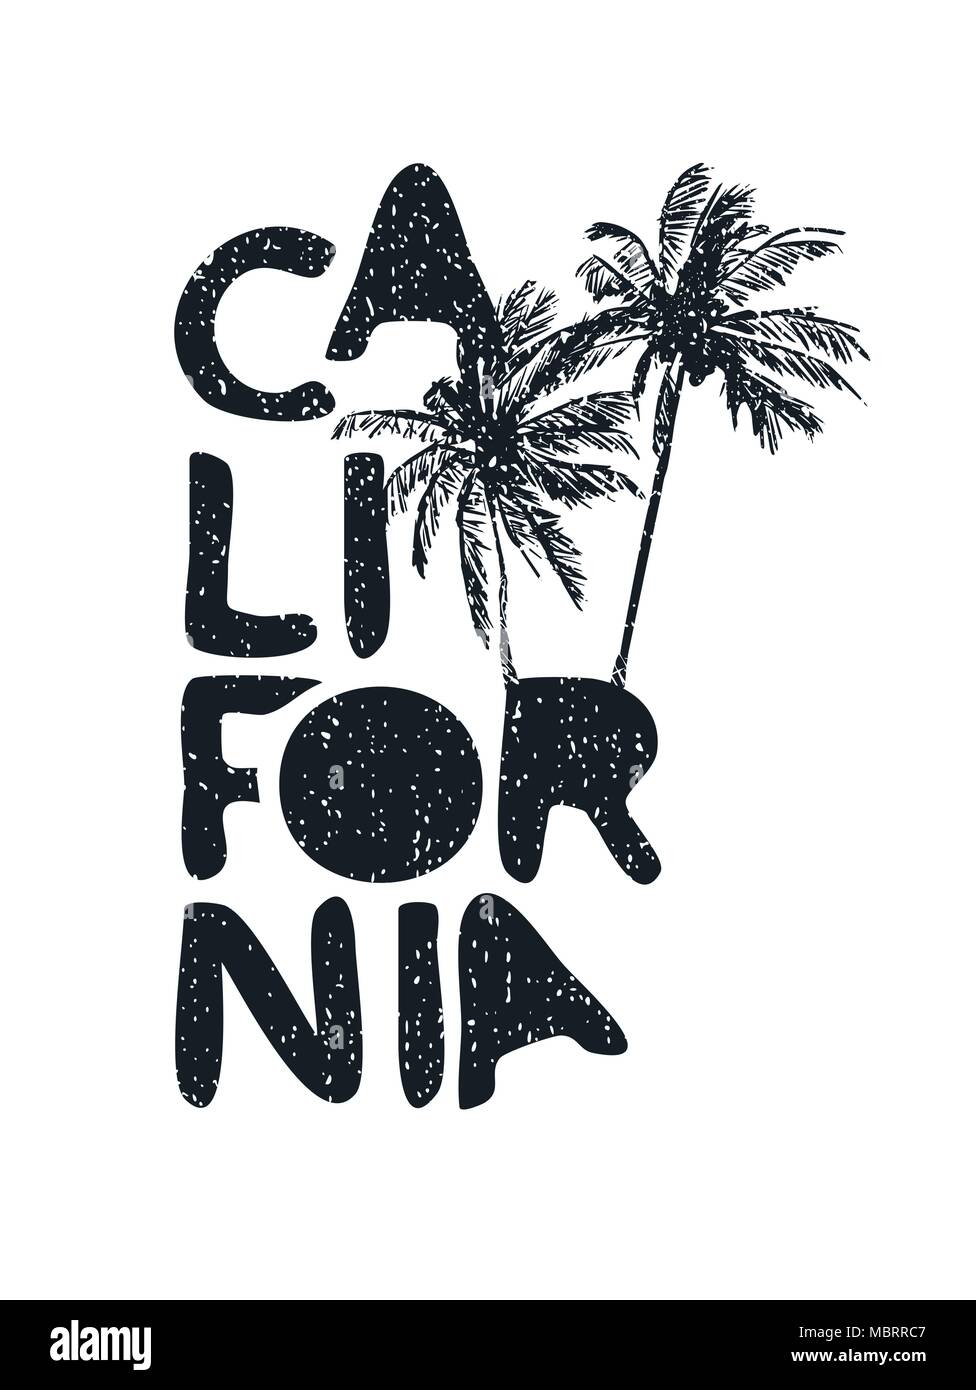 California Vintage typographie devis avec grunge texture et palmiers dessinés à la main. Locations d'été idéal pour la conception de la calligraphie du texte, d'impression ou te carte Illustration de Vecteur